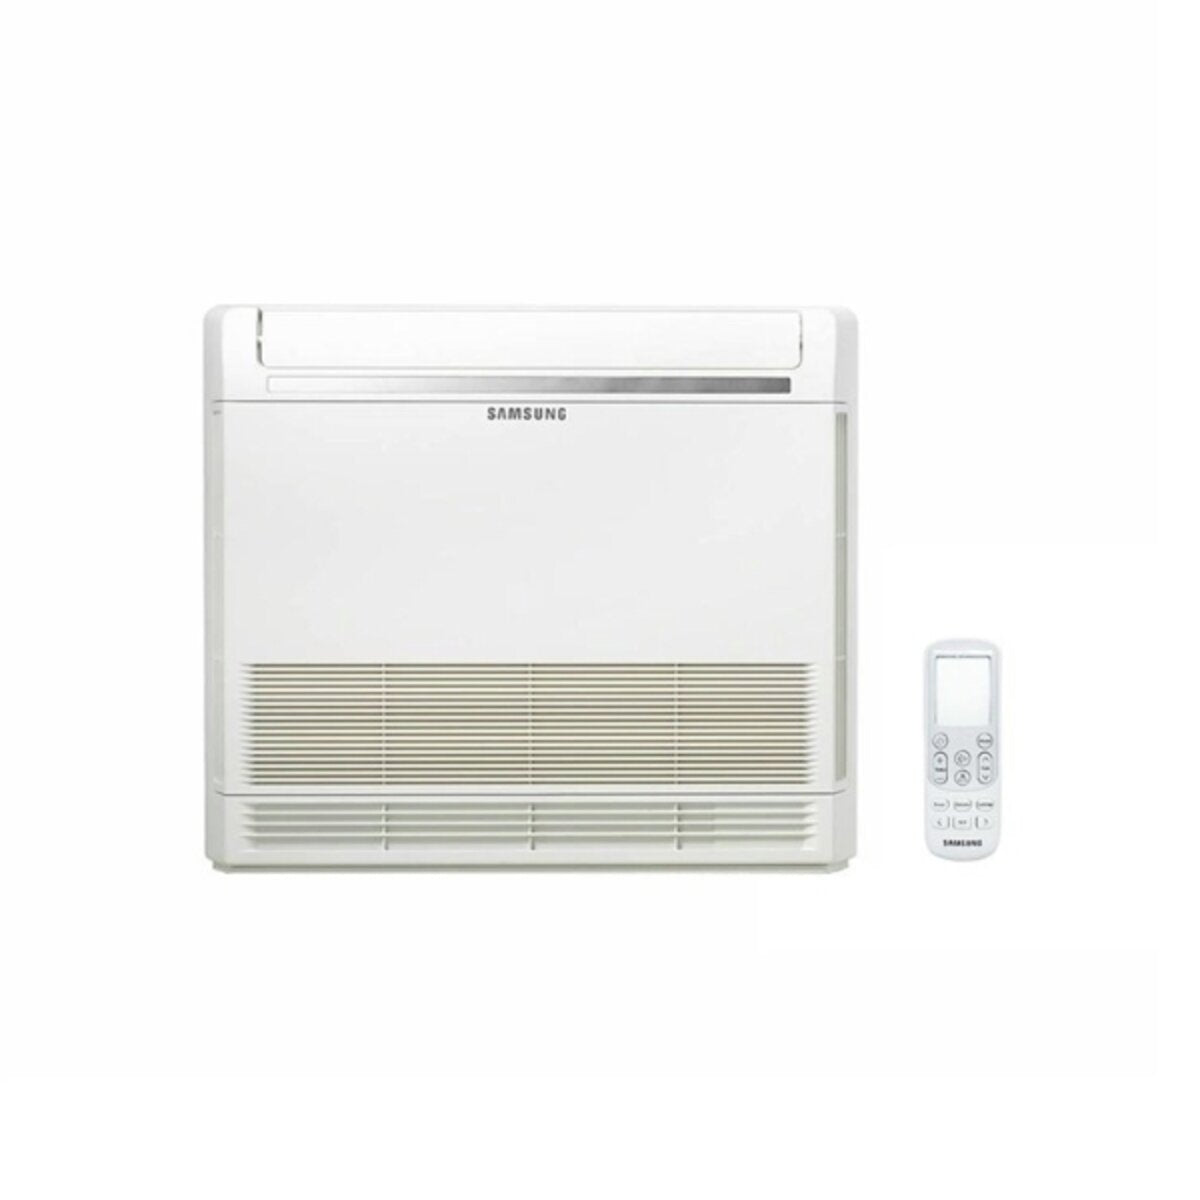 Samsung Klimakonsole Trial Split 9000 + 9000 + 12000 BTU Inverter A+++ Außengerät 5,2 kW